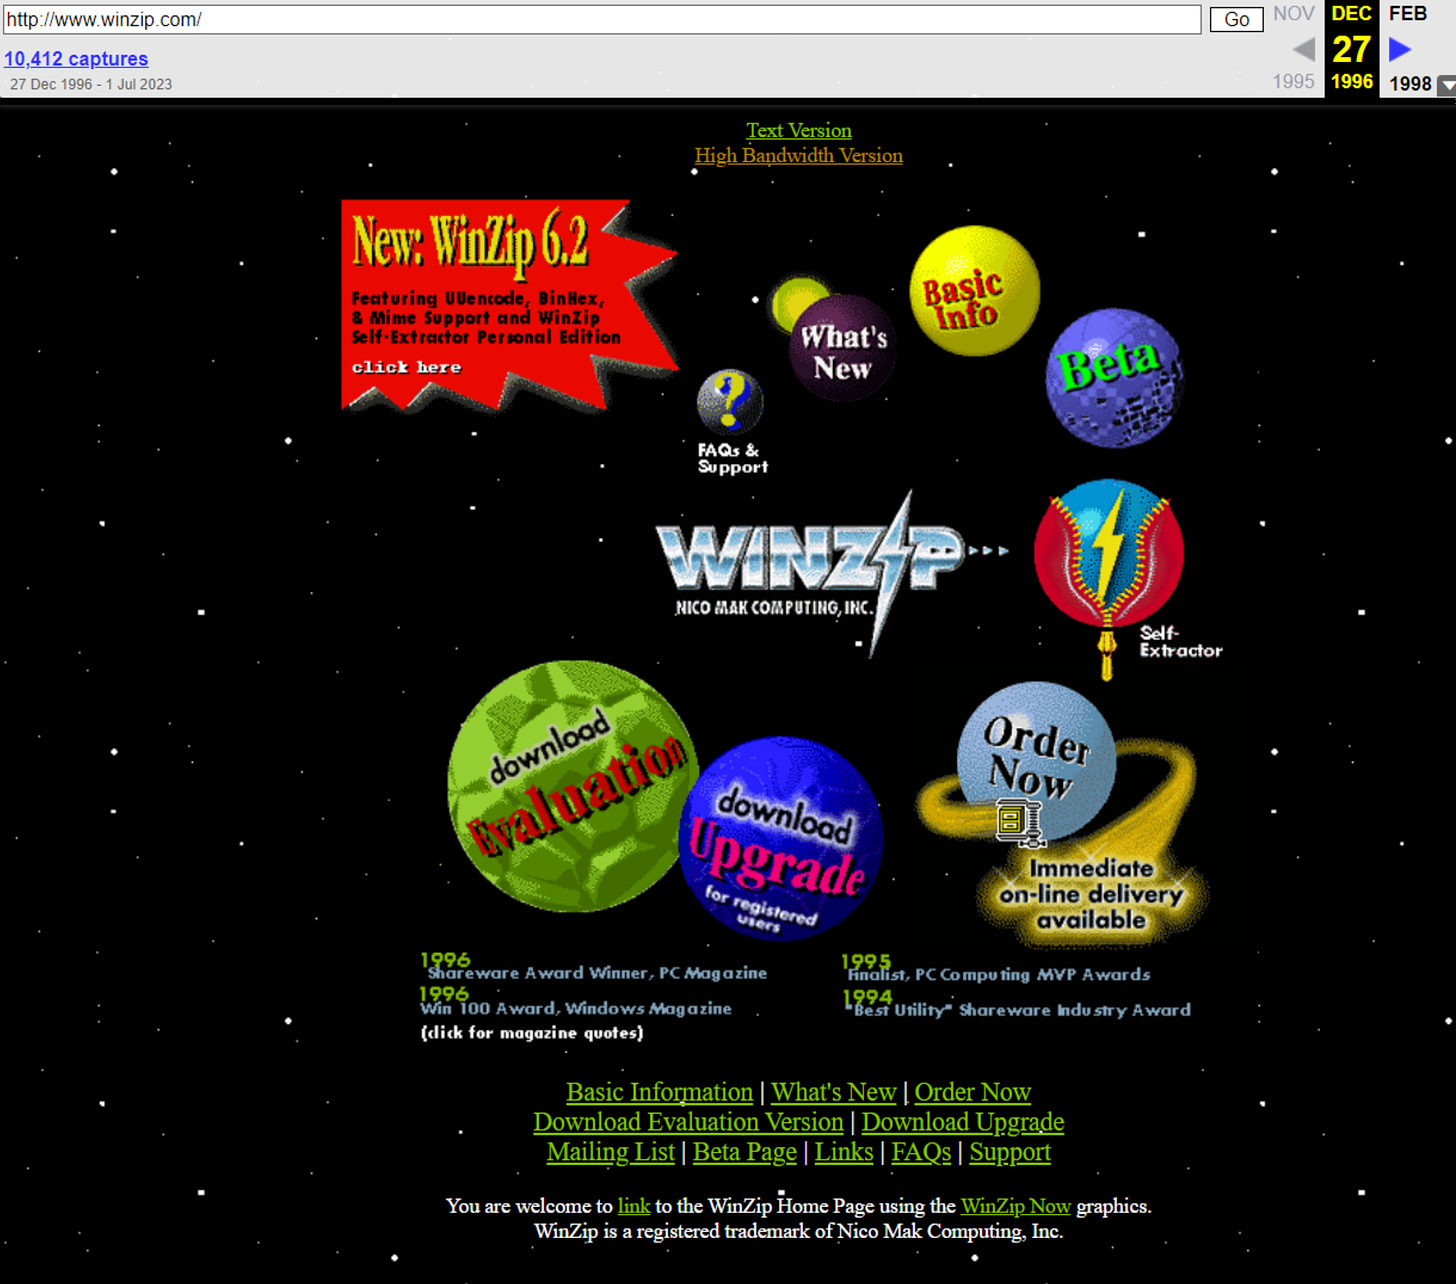 A screenshot of WinZip's website from 1996